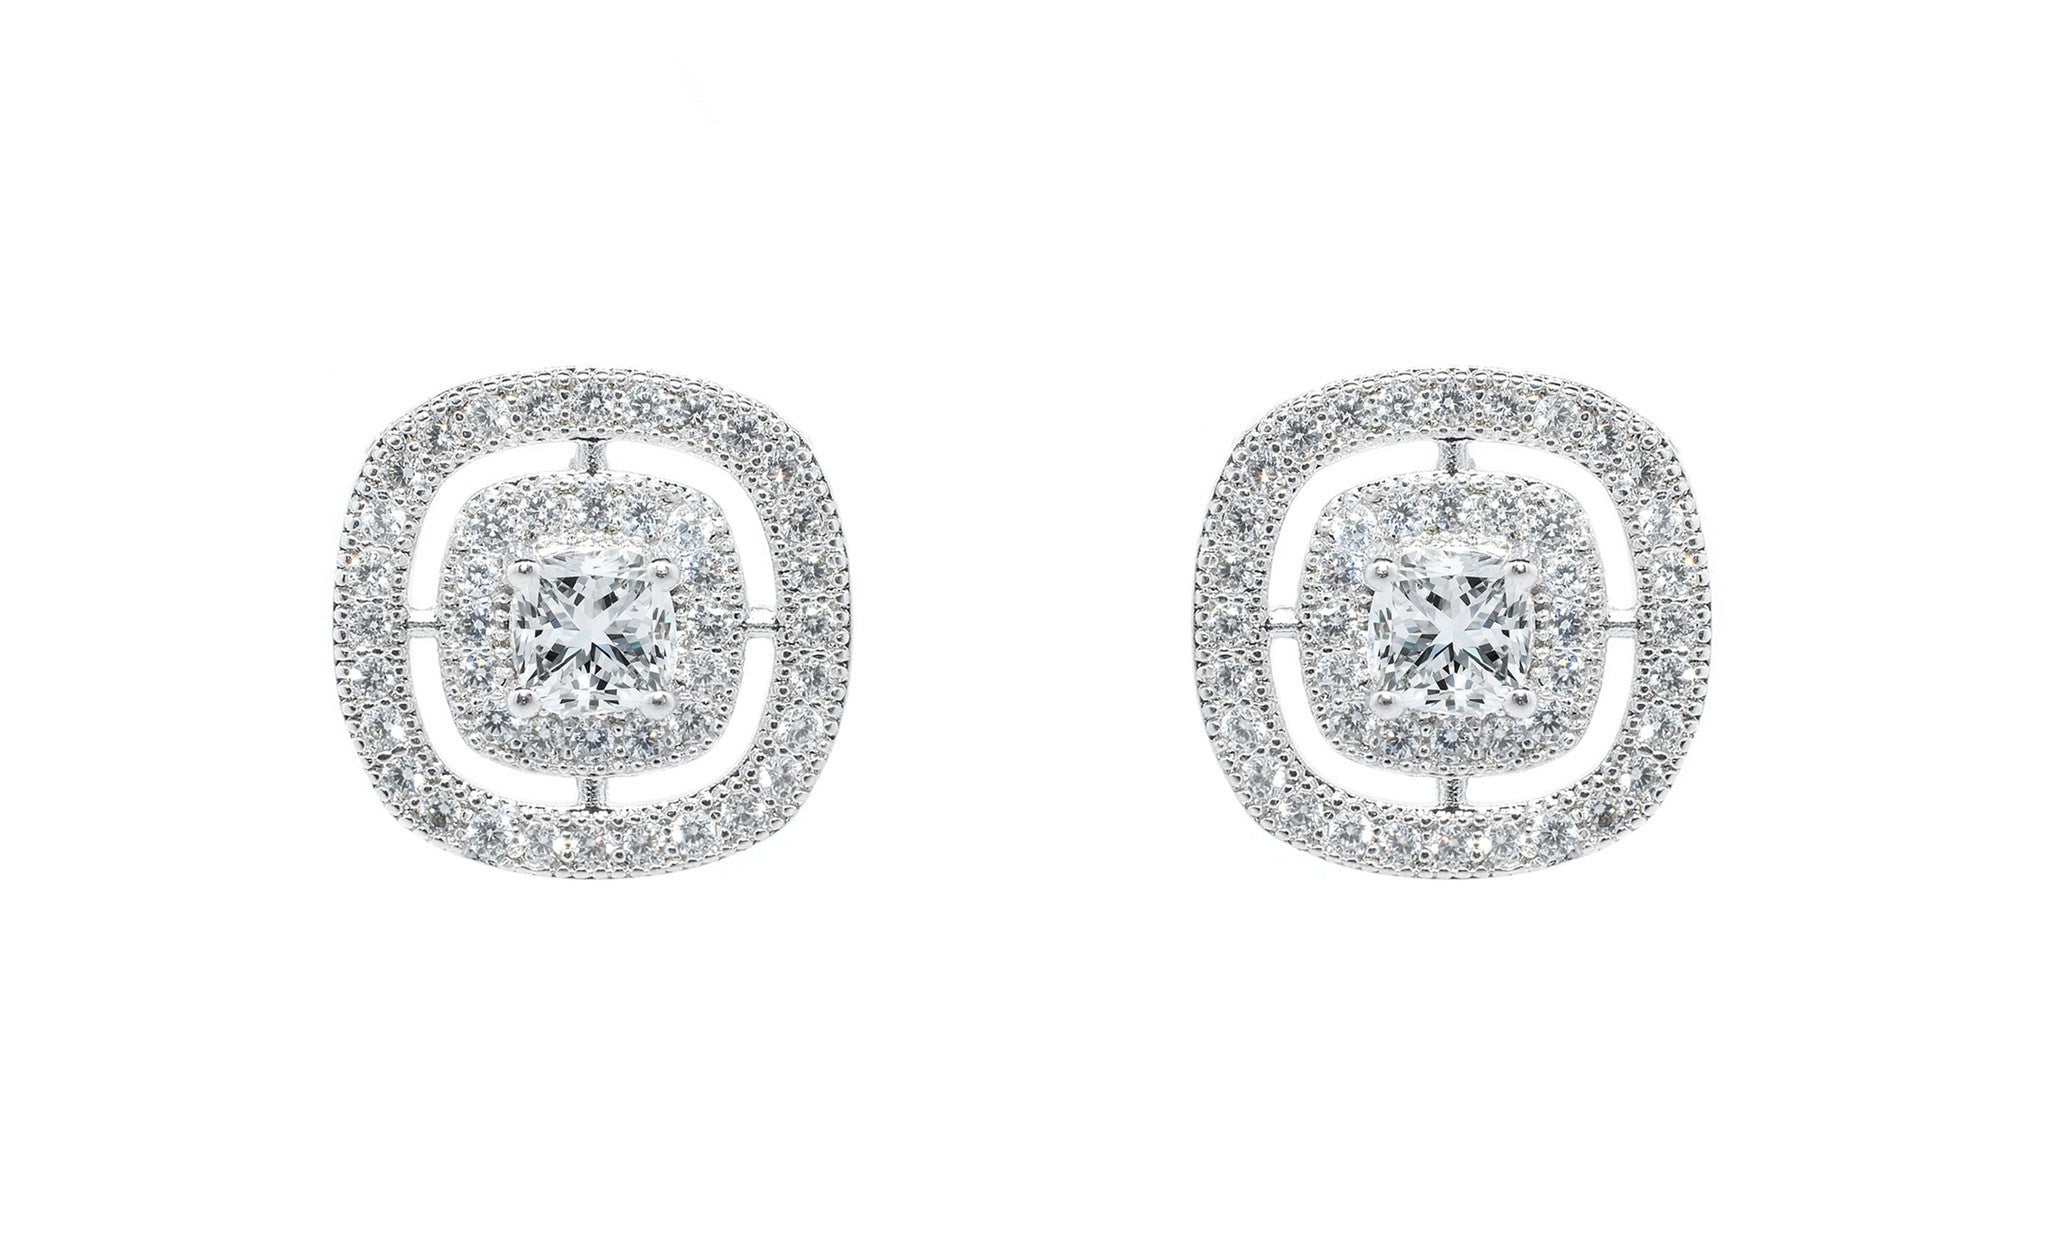 Jewelry, Earrings, Stud Earrings - Noelle "Chance" 18k White Gold Princess Cut Halo Earrings